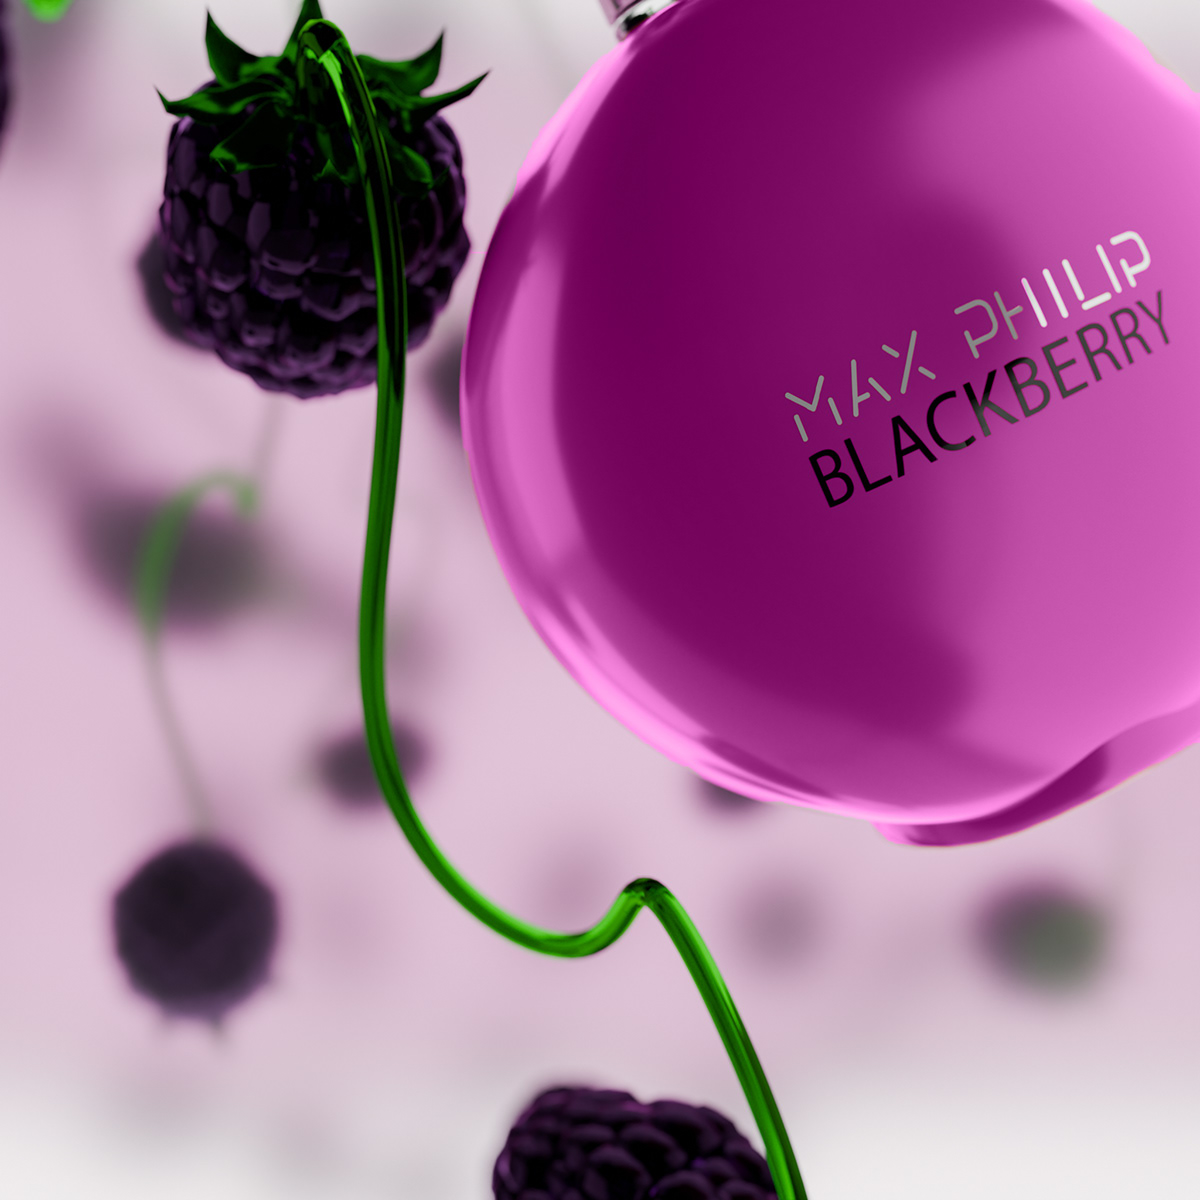 3D blender blackberry perfume 3d modeling visualization